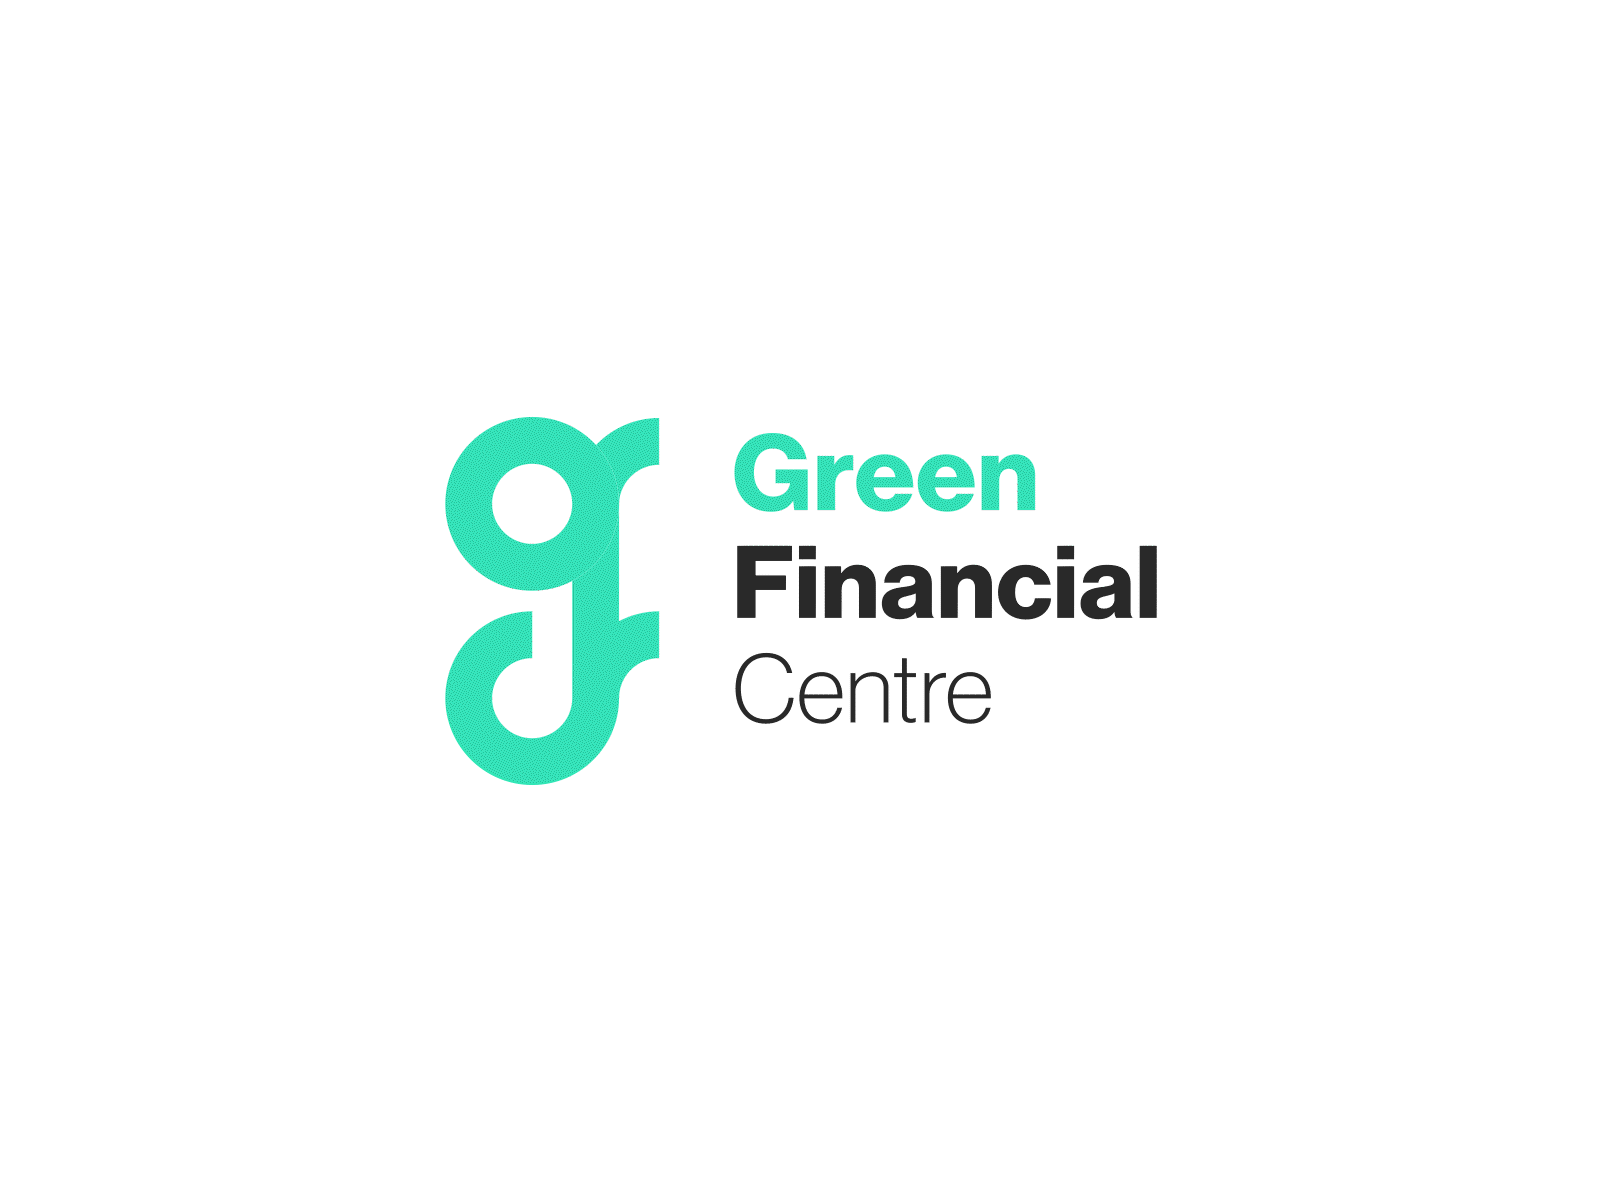 Green Financial Centre logo animation